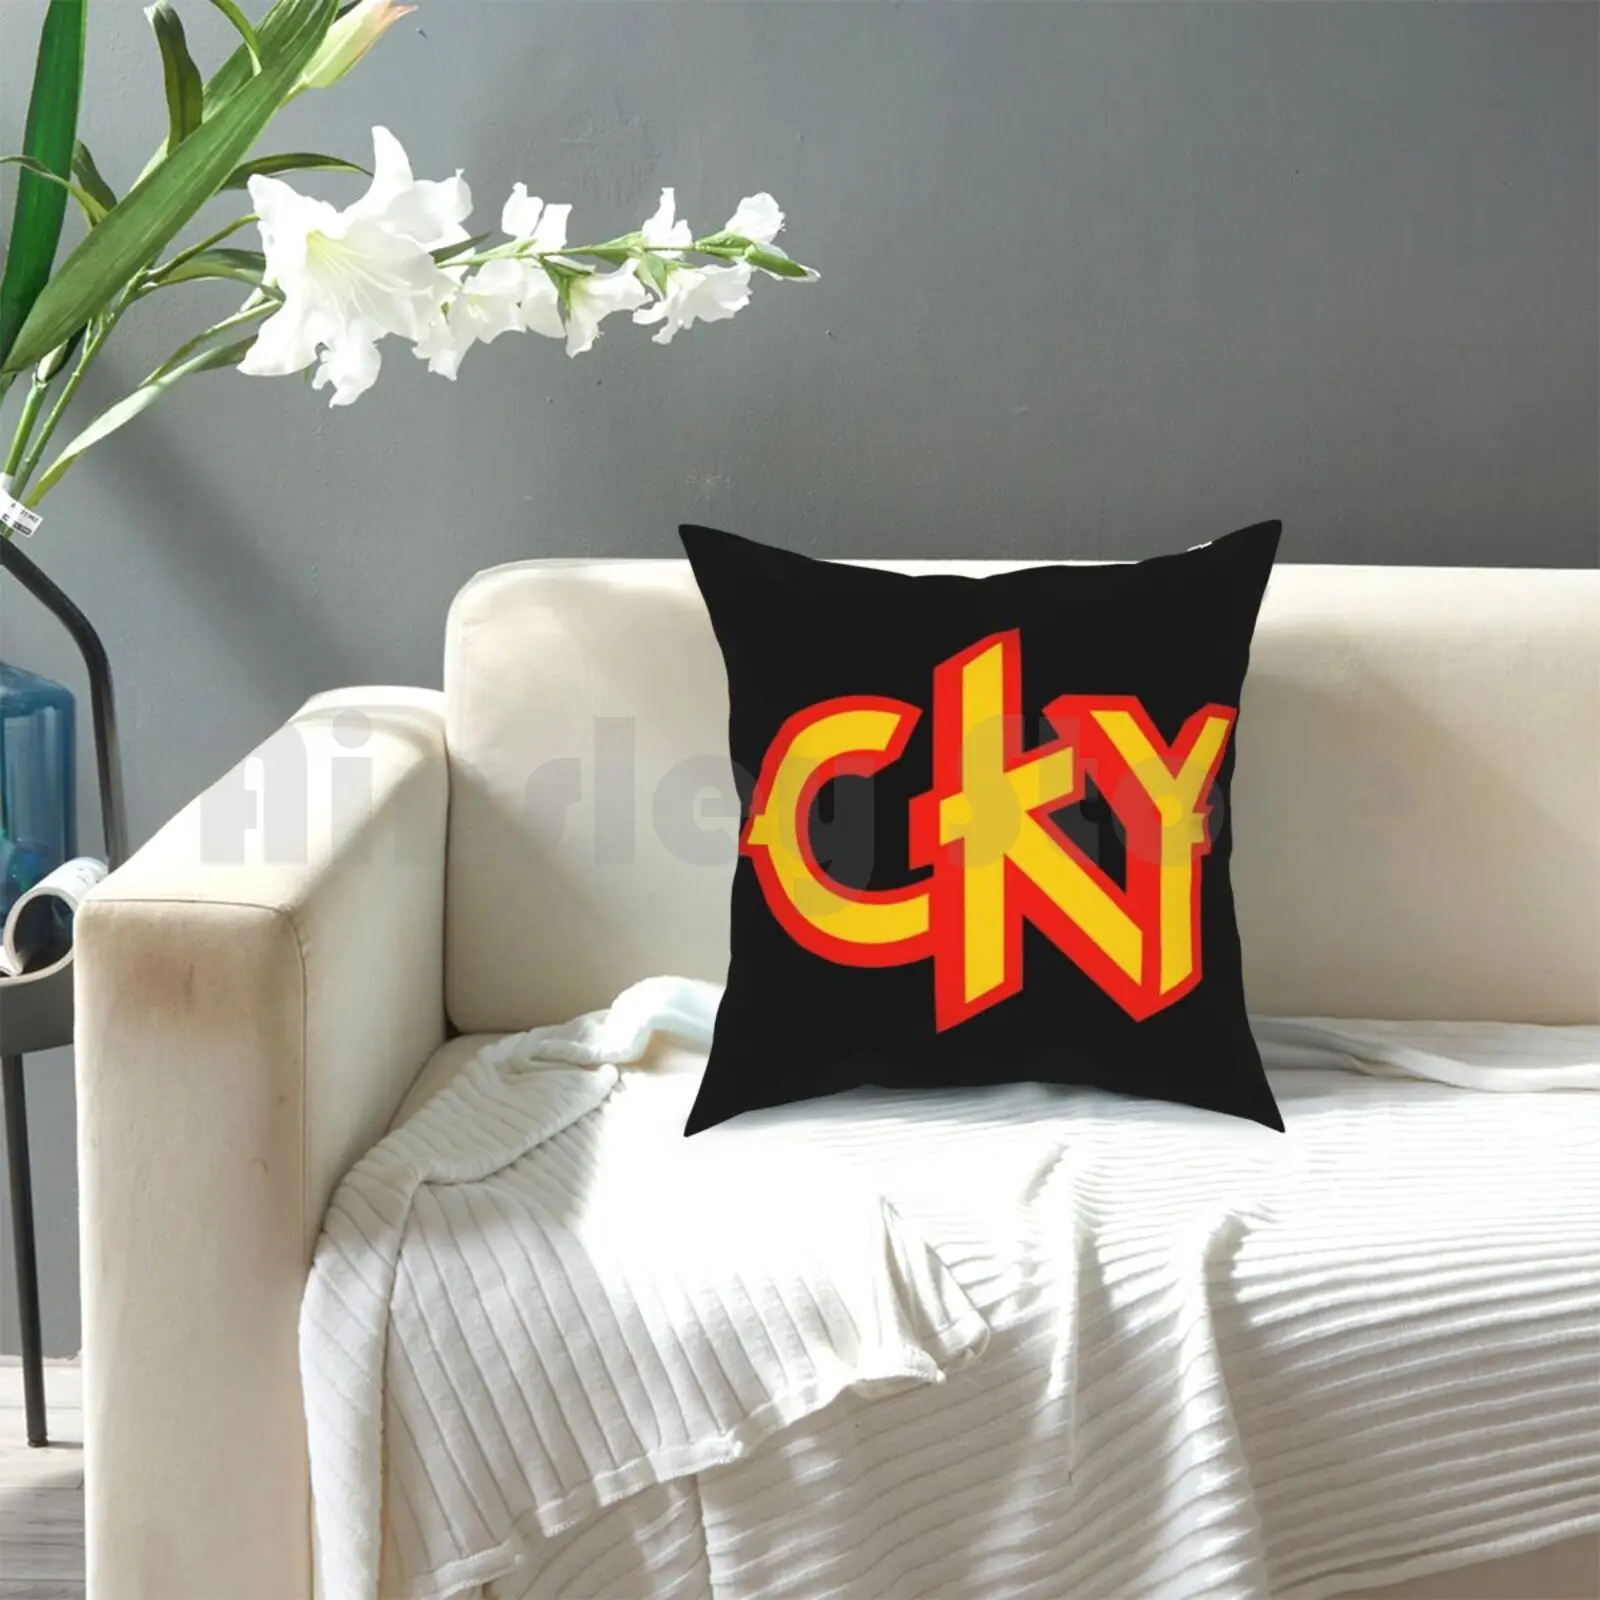 Cky Travesseiro Impresso Casa Macio DIY fronha de Cky Banda Idiota Viva La Bam Engraçado Bam Margera, Ryan Dunn bem-vindo Ao